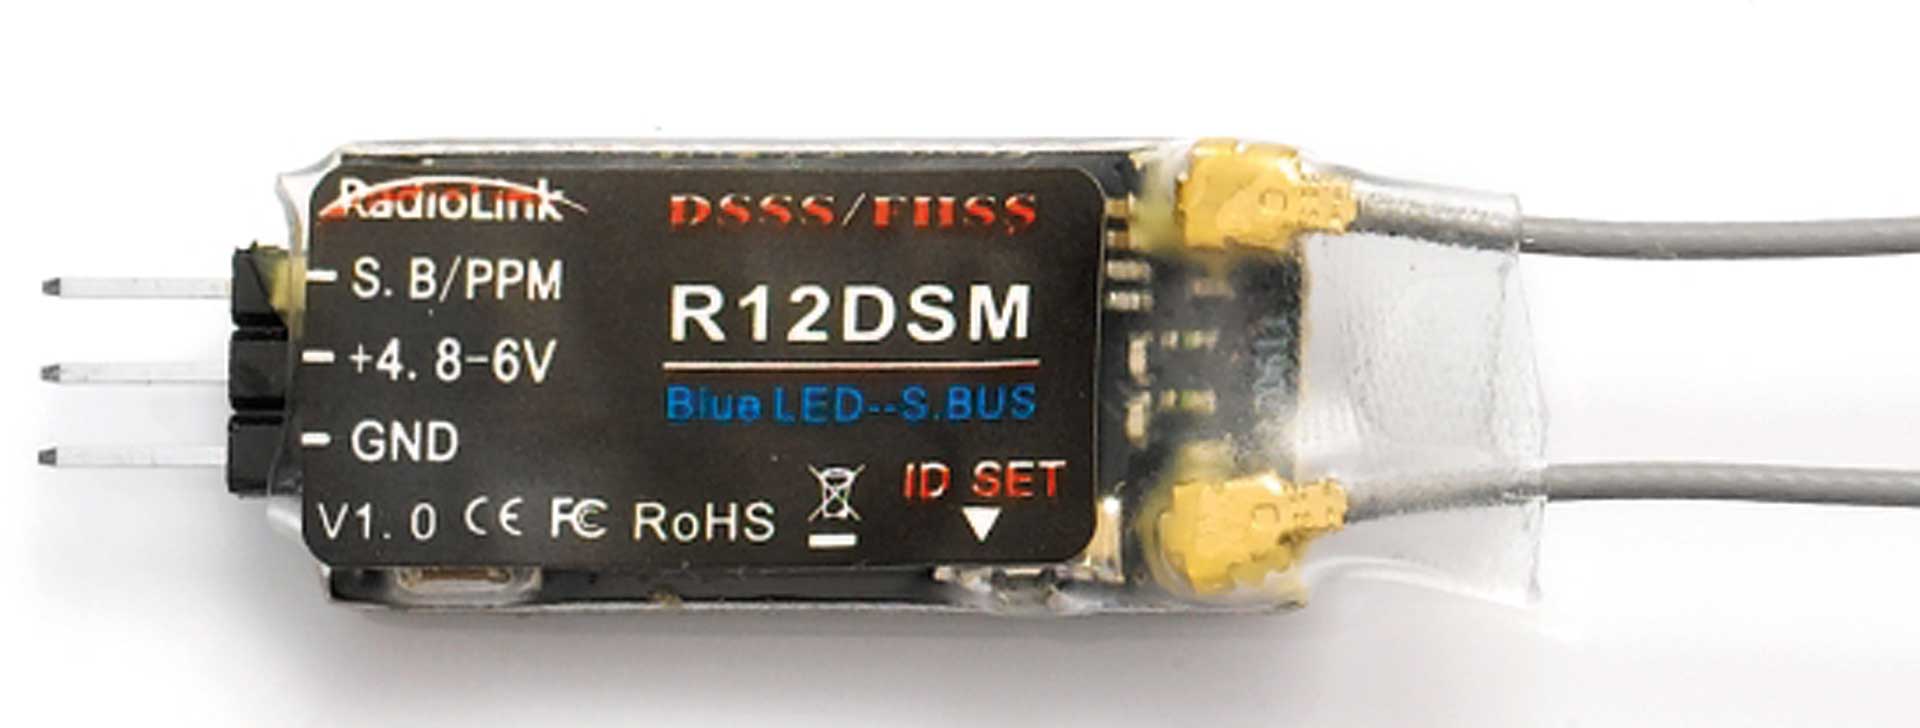 RadioLink Empfänger R12DSM Mini 12-Kanal FHSS/DSSS